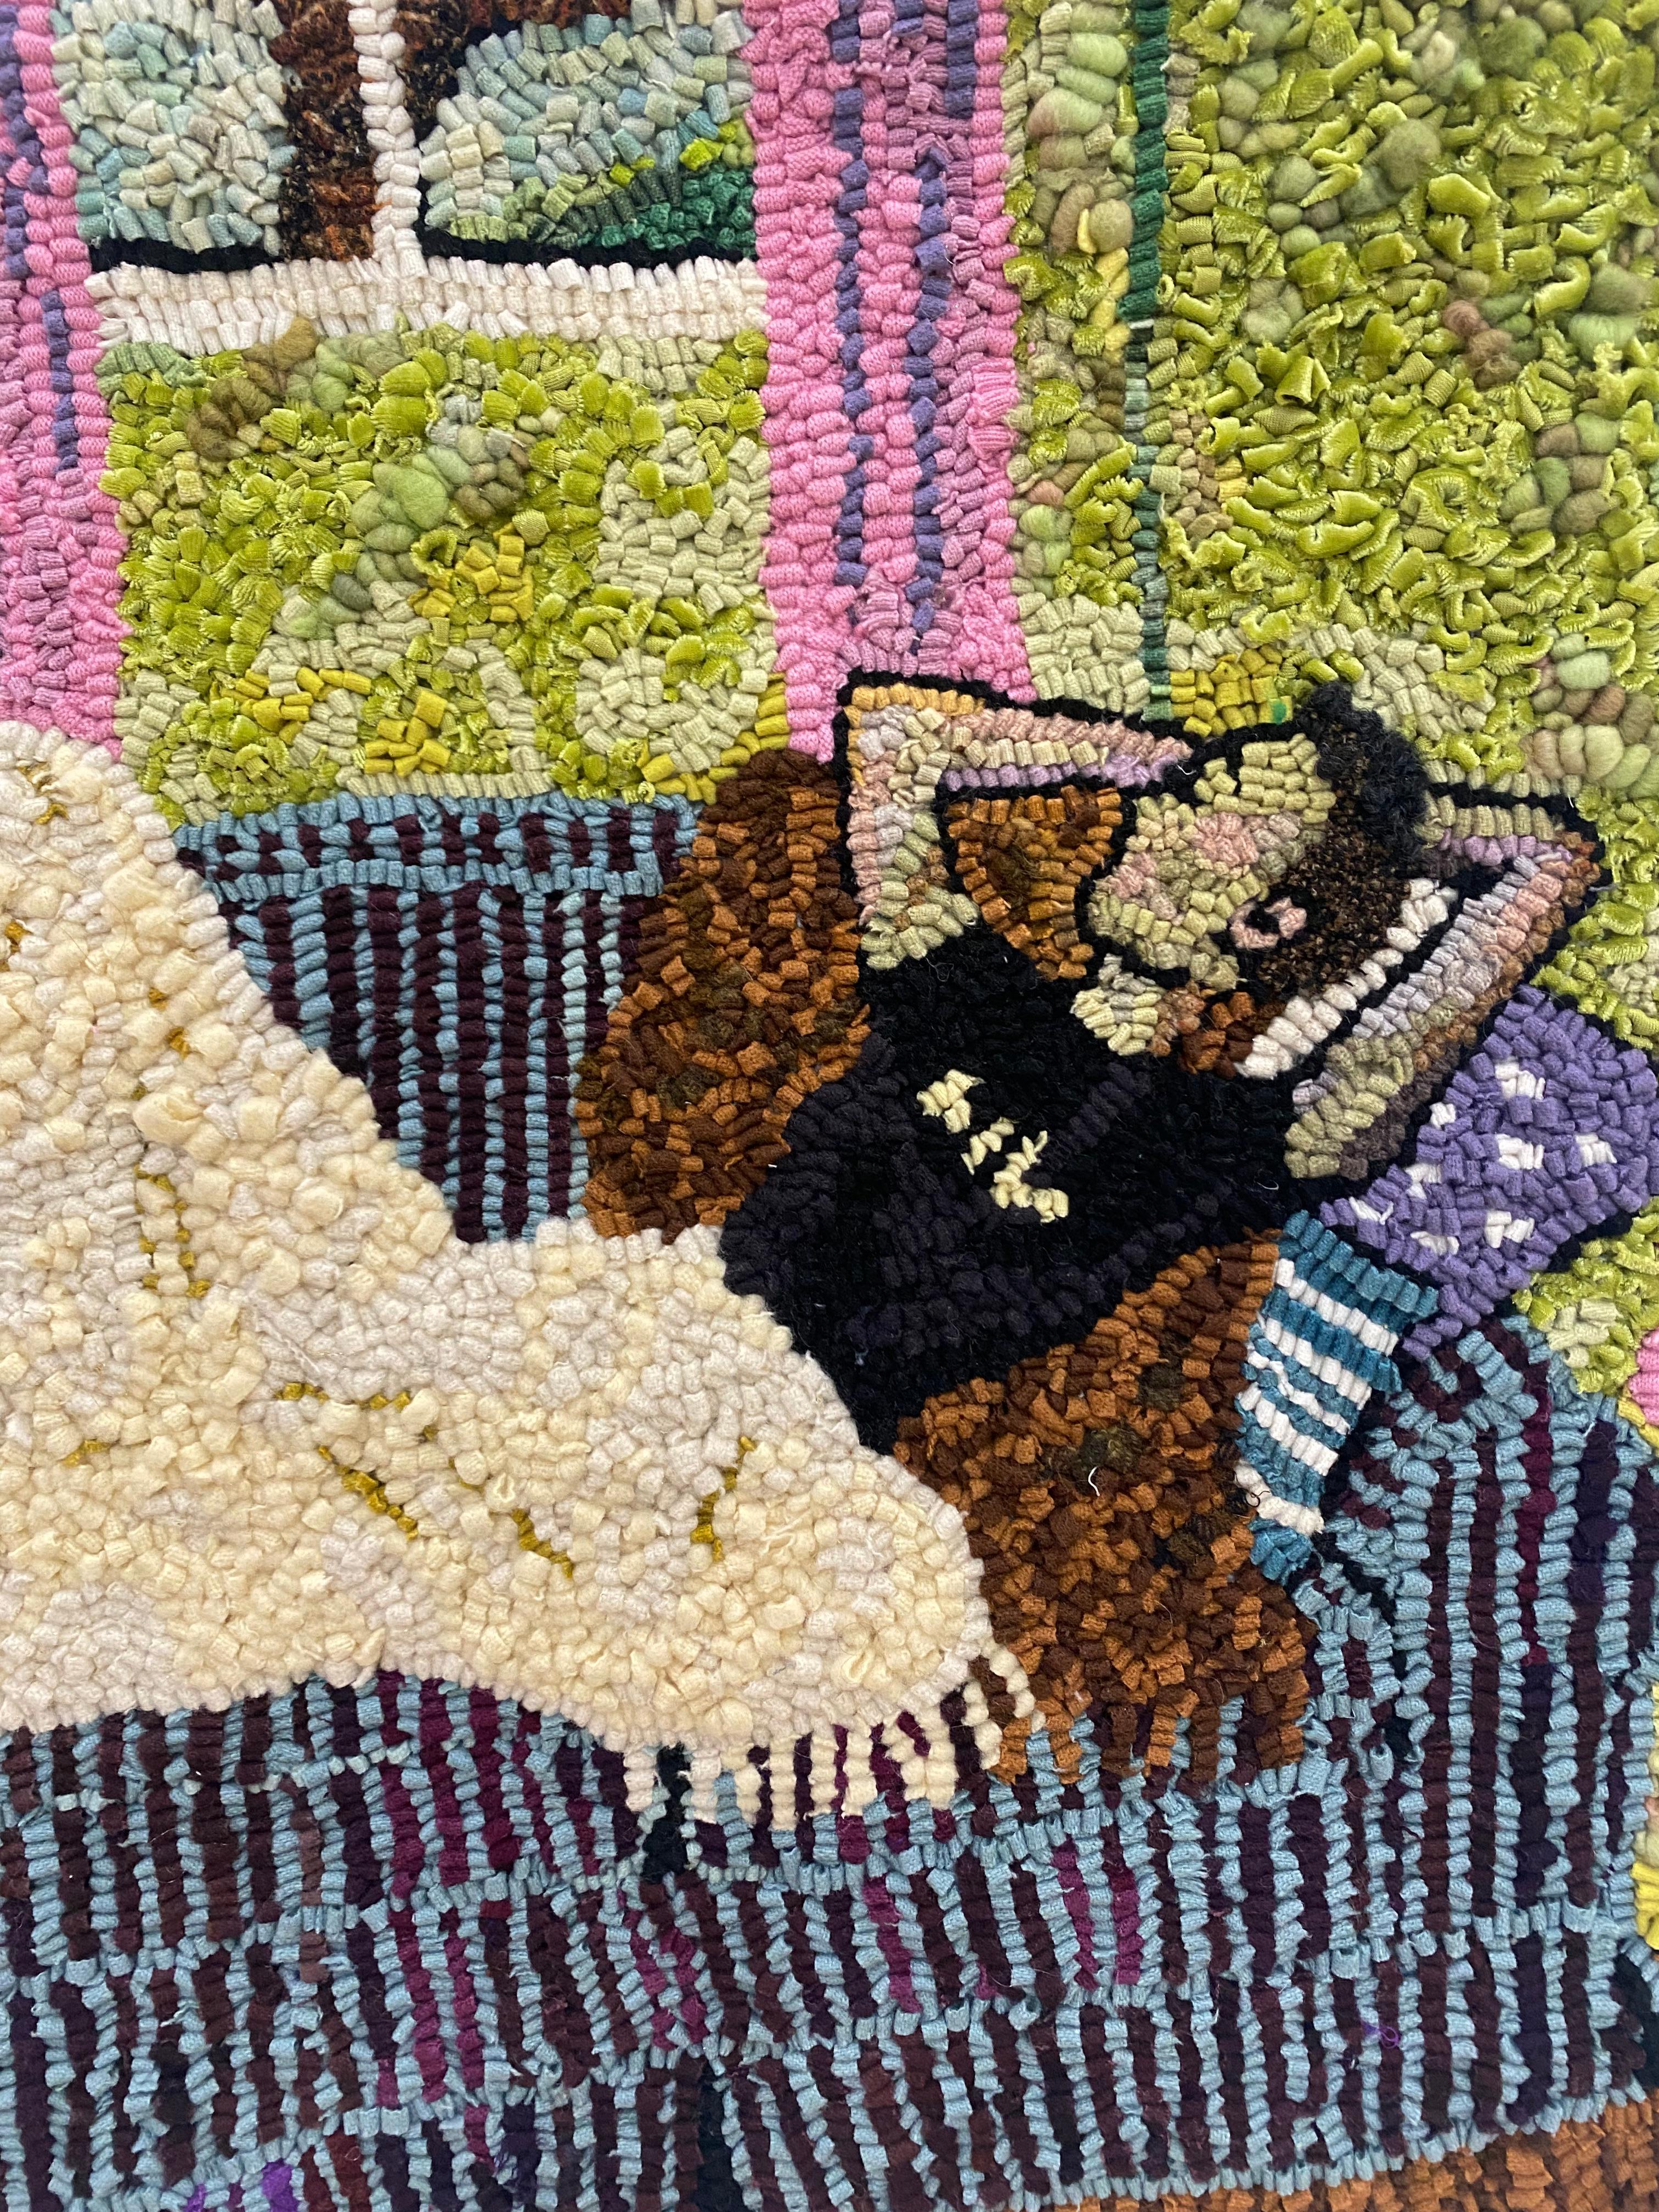 Nap-Serie Zwei, Inneneinrichtung, Figur auf blauer Kommode, schwarzer Hund, grünes Zimmer (Zeitgenössisch), Painting, von Mary Tooley Parker